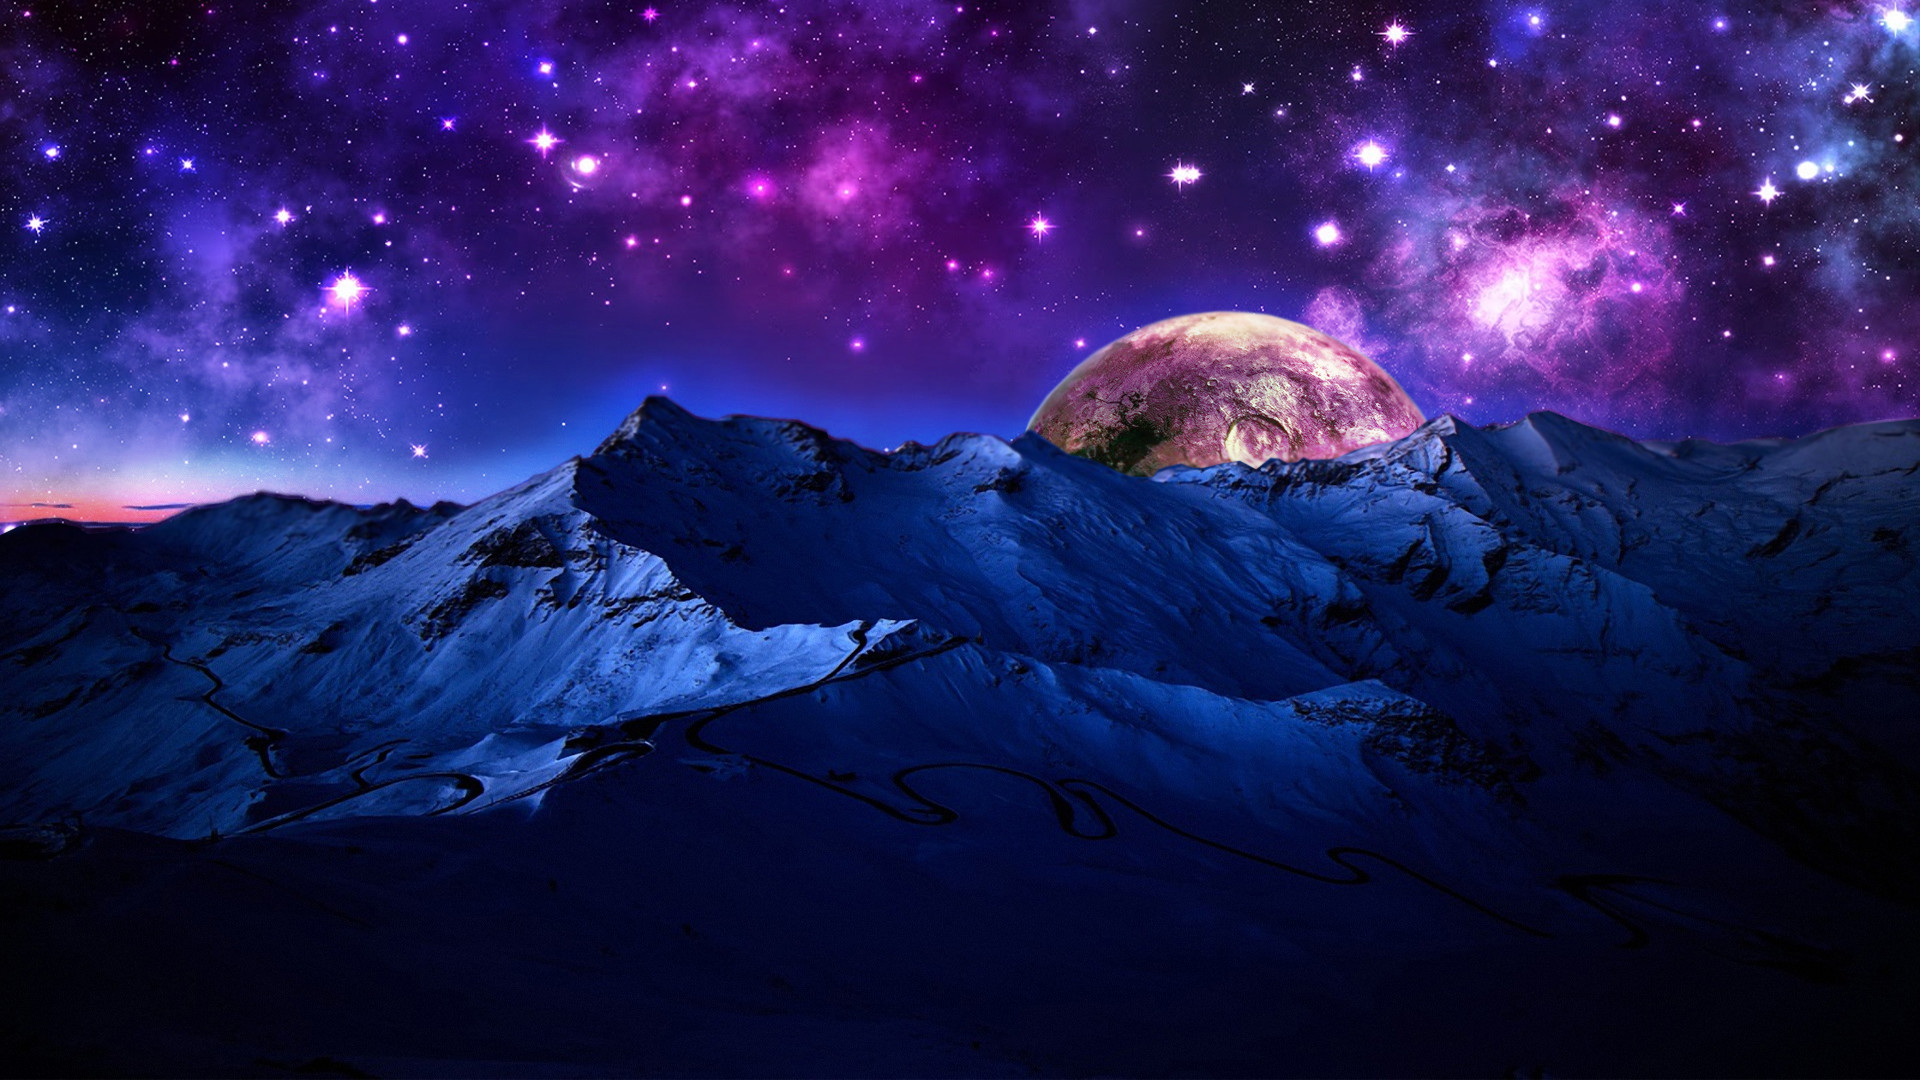 Ngân hà: Chào mừng bạn đến với thế giới đầy bí ẩn của ngân hà! Hãy cùng chúng tôi khám phá những hình ảnh đẹp nhất về những vùng trời xa xôi này và ngập tràn những ngôi sao lấp lánh trong đêm tối. Bạn sẽ cảm thấy như bước vào một thế giới khác!